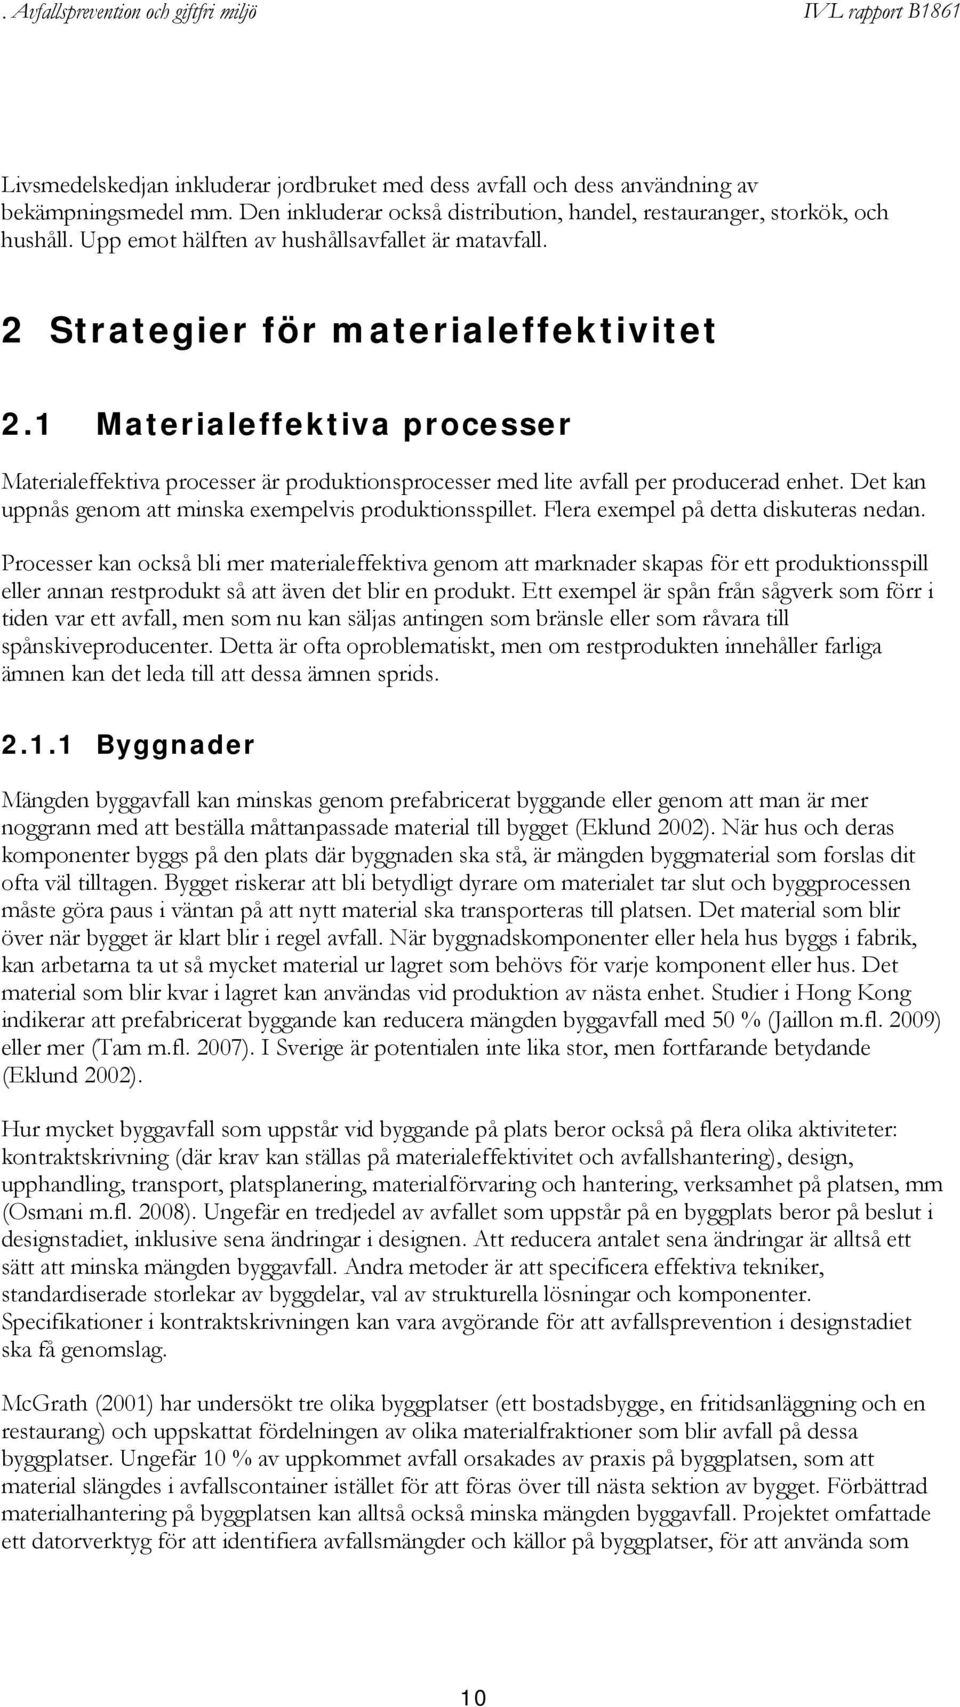 1 Materialeffektiva processer Materialeffektiva processer är produktionsprocesser med lite avfall per producerad enhet. Det kan uppnås genom att minska exempelvis produktionsspillet.